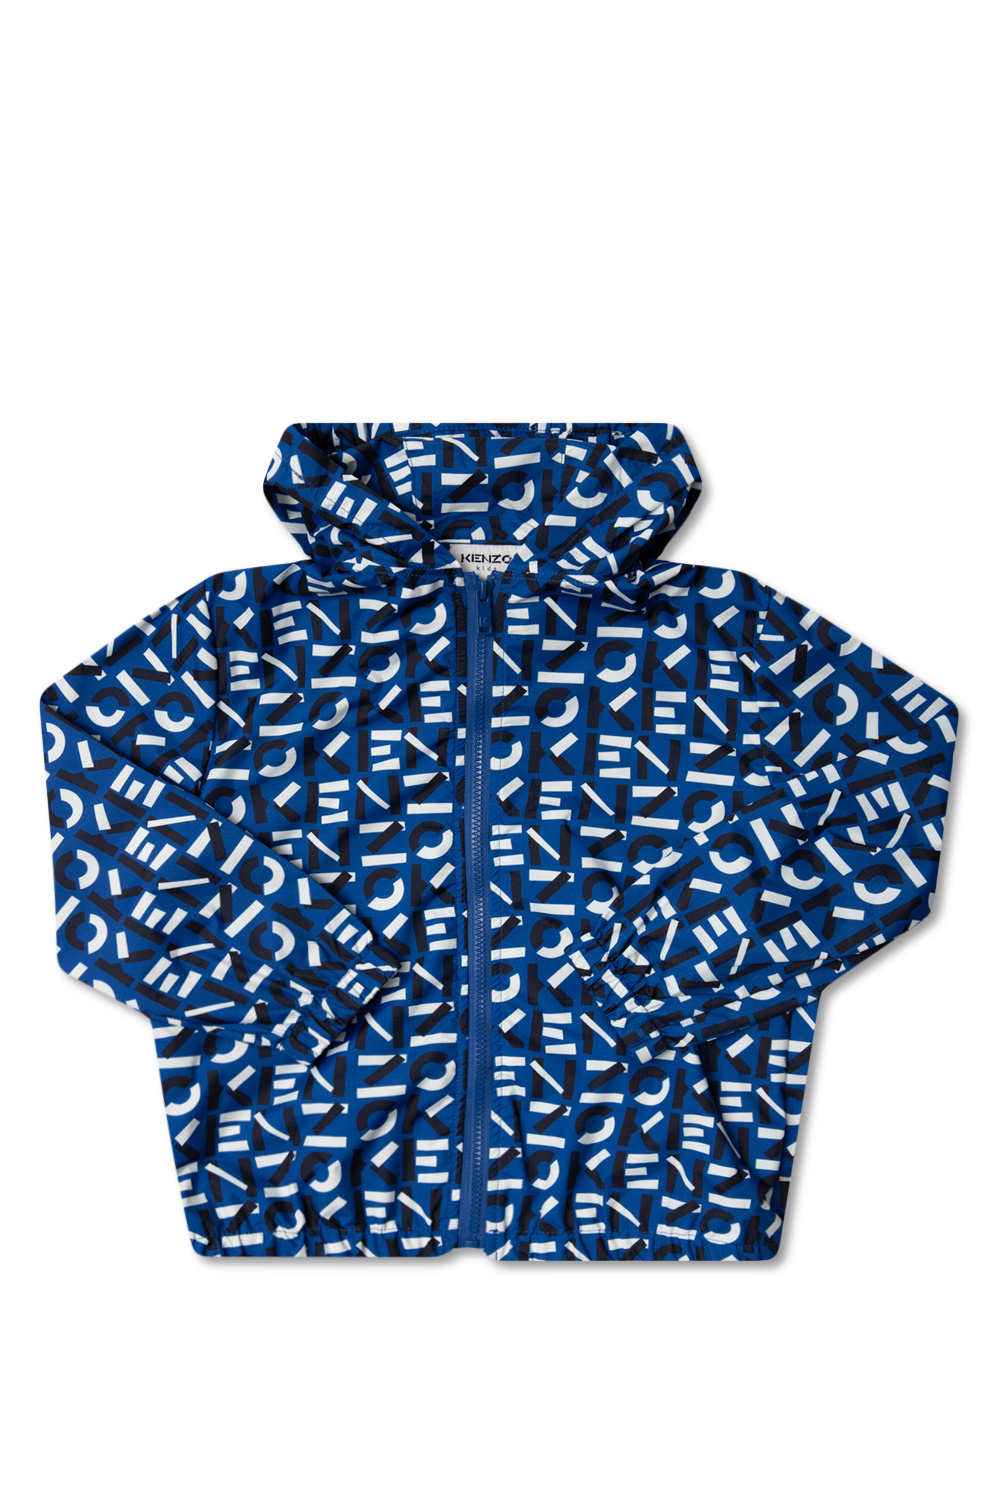 Kenzo Kids air jordan 1 zoom cmft psg x jordan paris saint germain printed fleece pullover hoodie